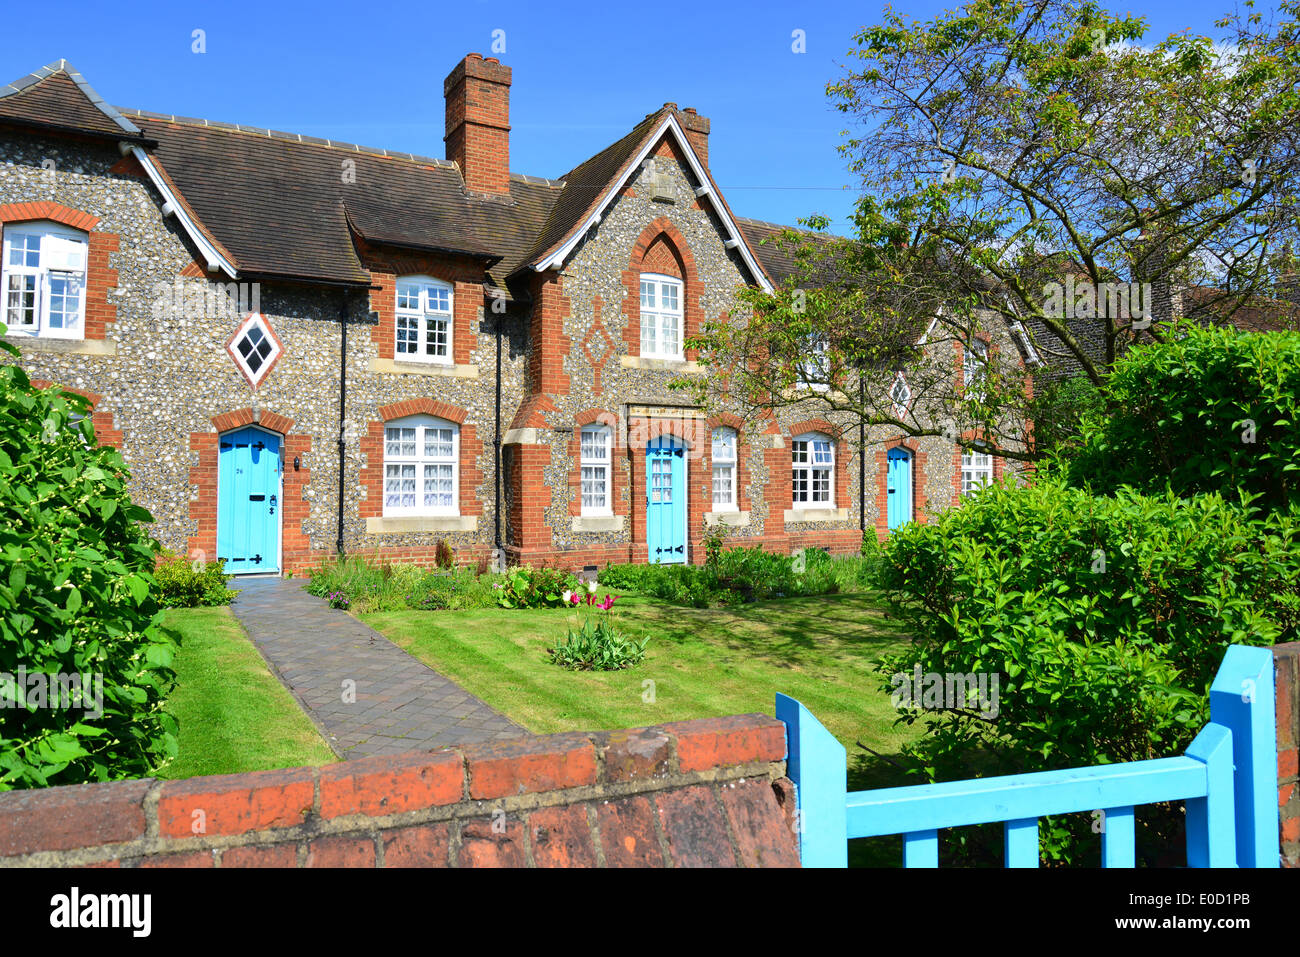 Stone cottages, Swakeley Road, Ickenham, London Borough of Hillingdon, Greater London, England, United Kingdom Stock Photo